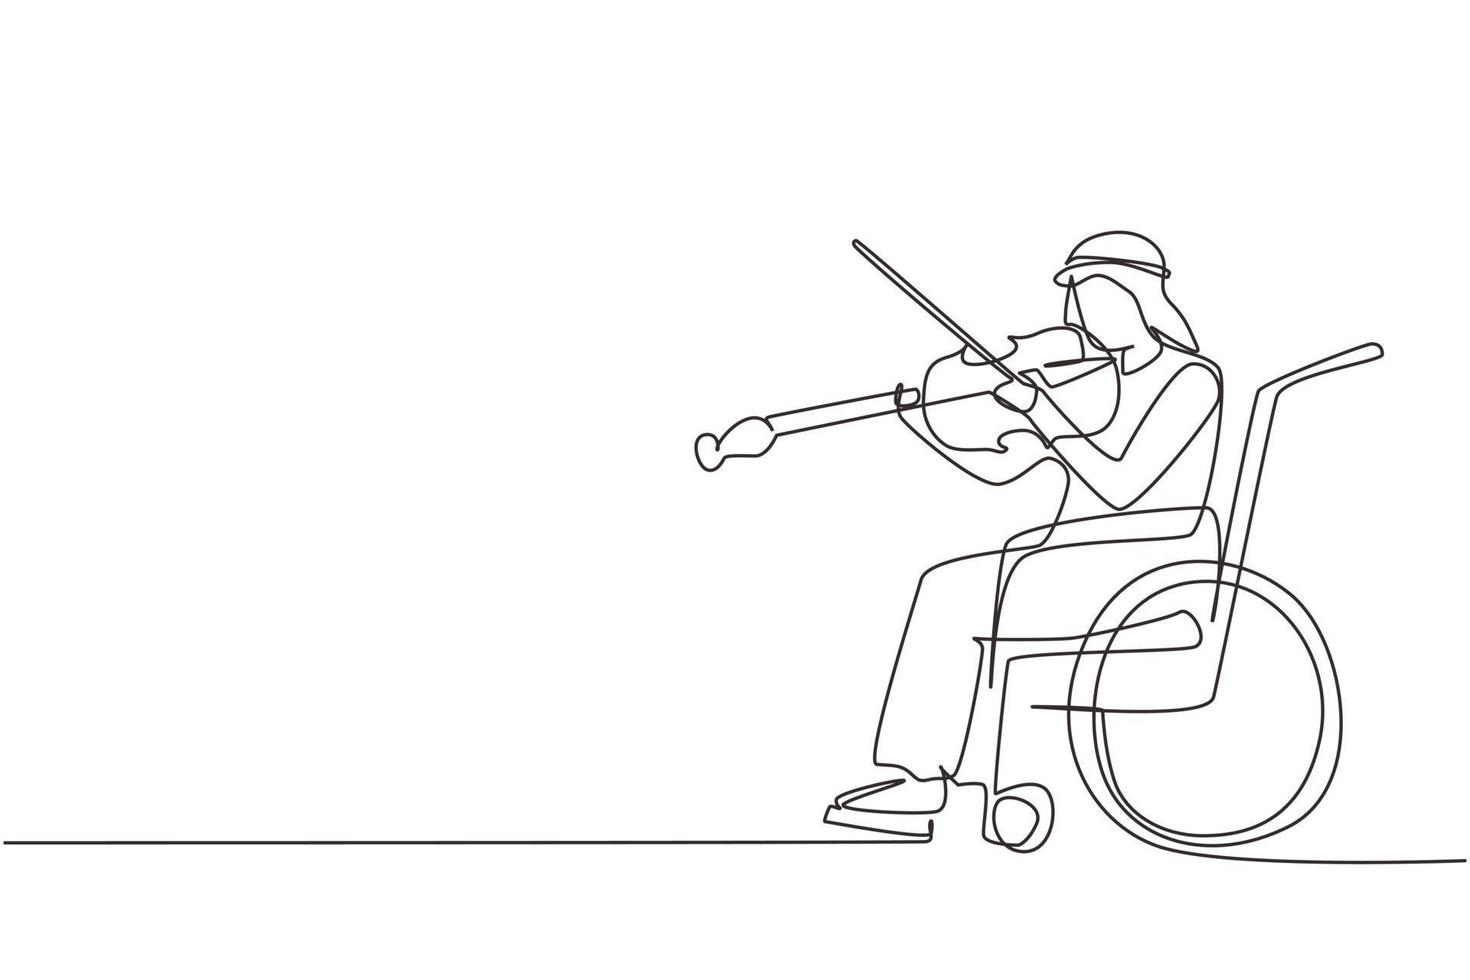 kontinuerlig en rad teckning funktionshinder och musik. arabisk man i rullstol spelar fiol. fysiskt handikappad. person på sjukhus. patient på rehabiliteringscenter. en rad rita design vektorgrafik vektor